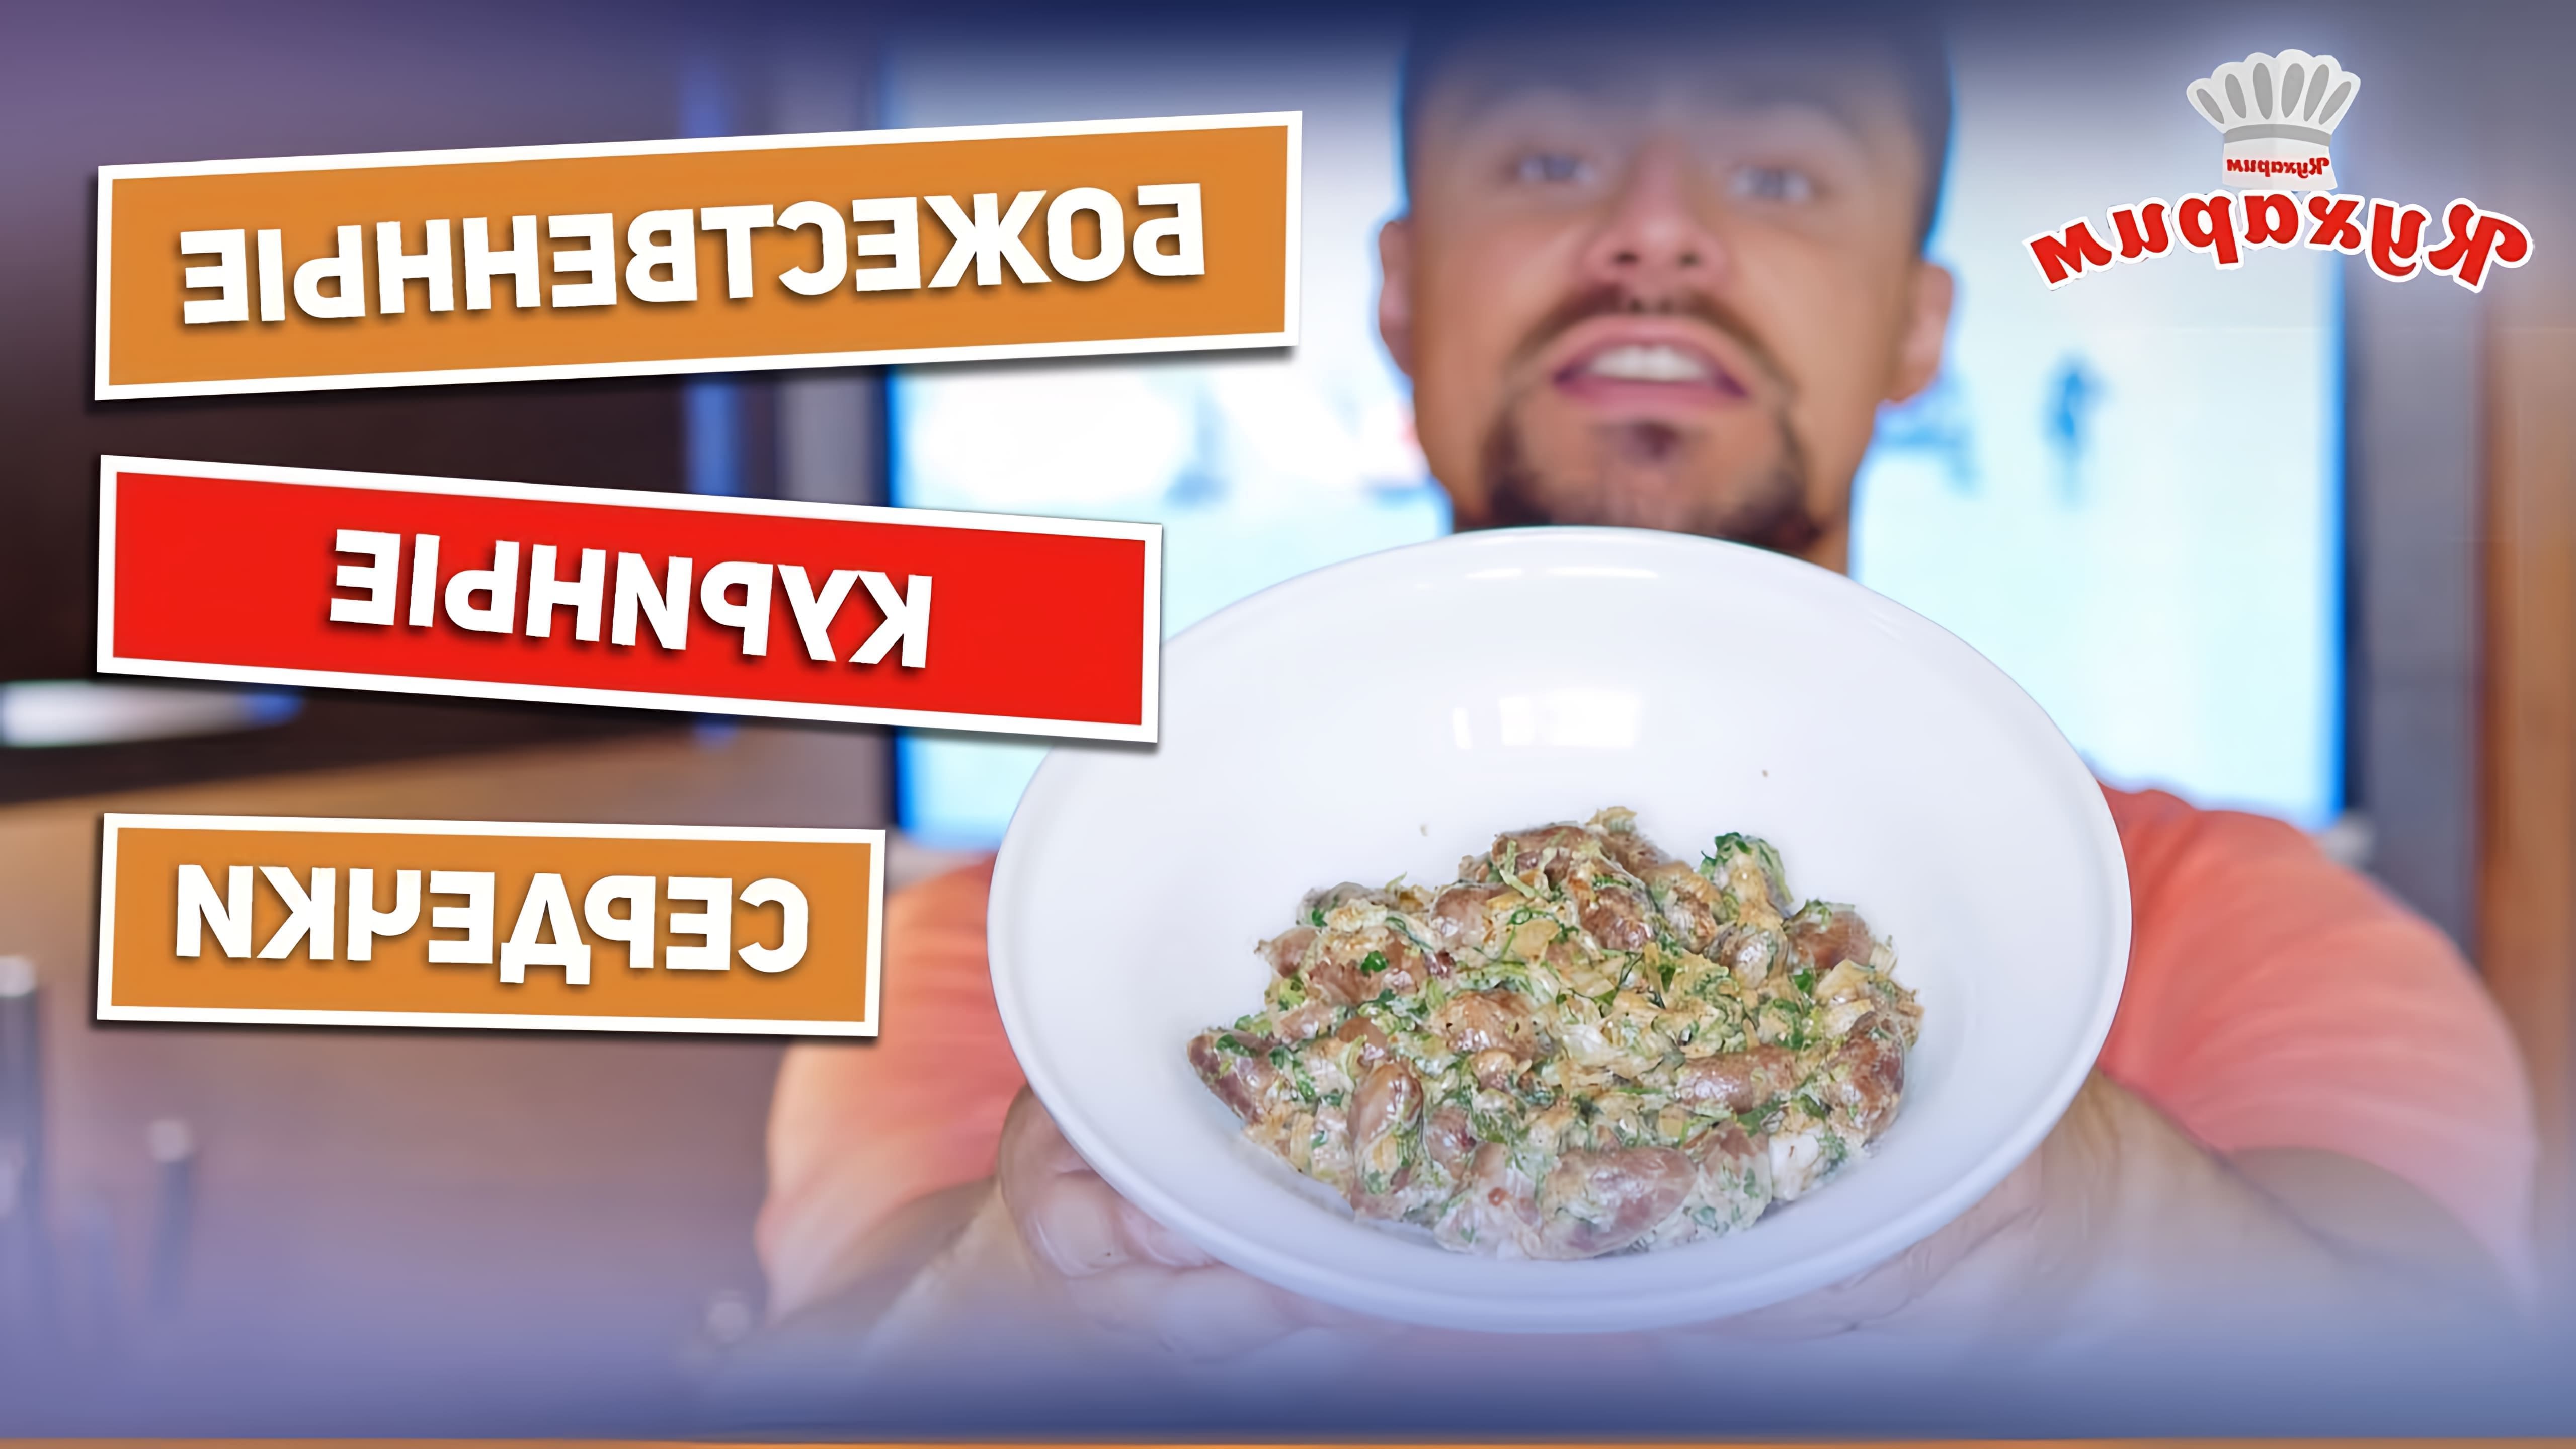 В этом видео Антон показывает рецепт куриных сердечек, который поможет полюбить этот субпродукт